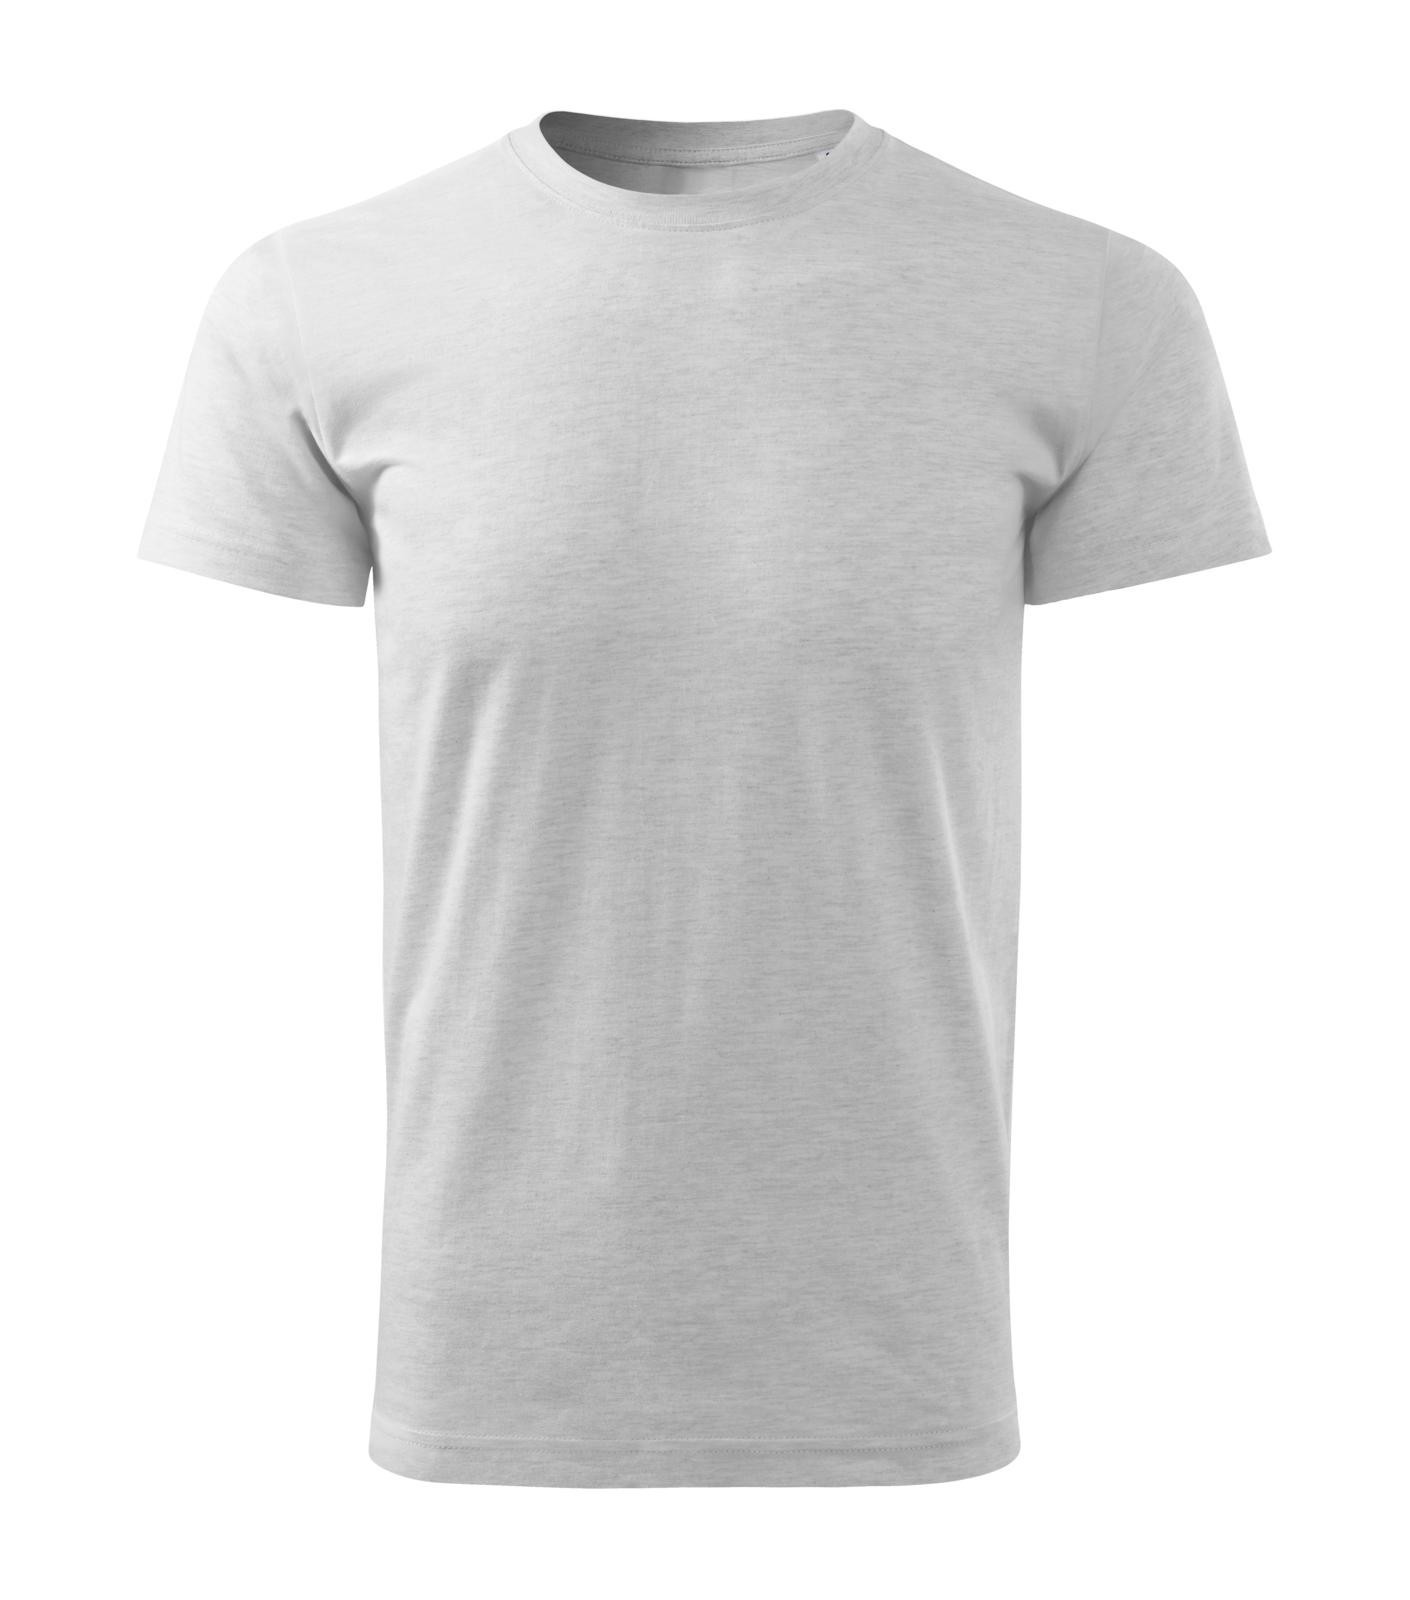 Pánske tričko Malfini Basic Free F29 - veľkosť: M, farba: svetlosivý melír